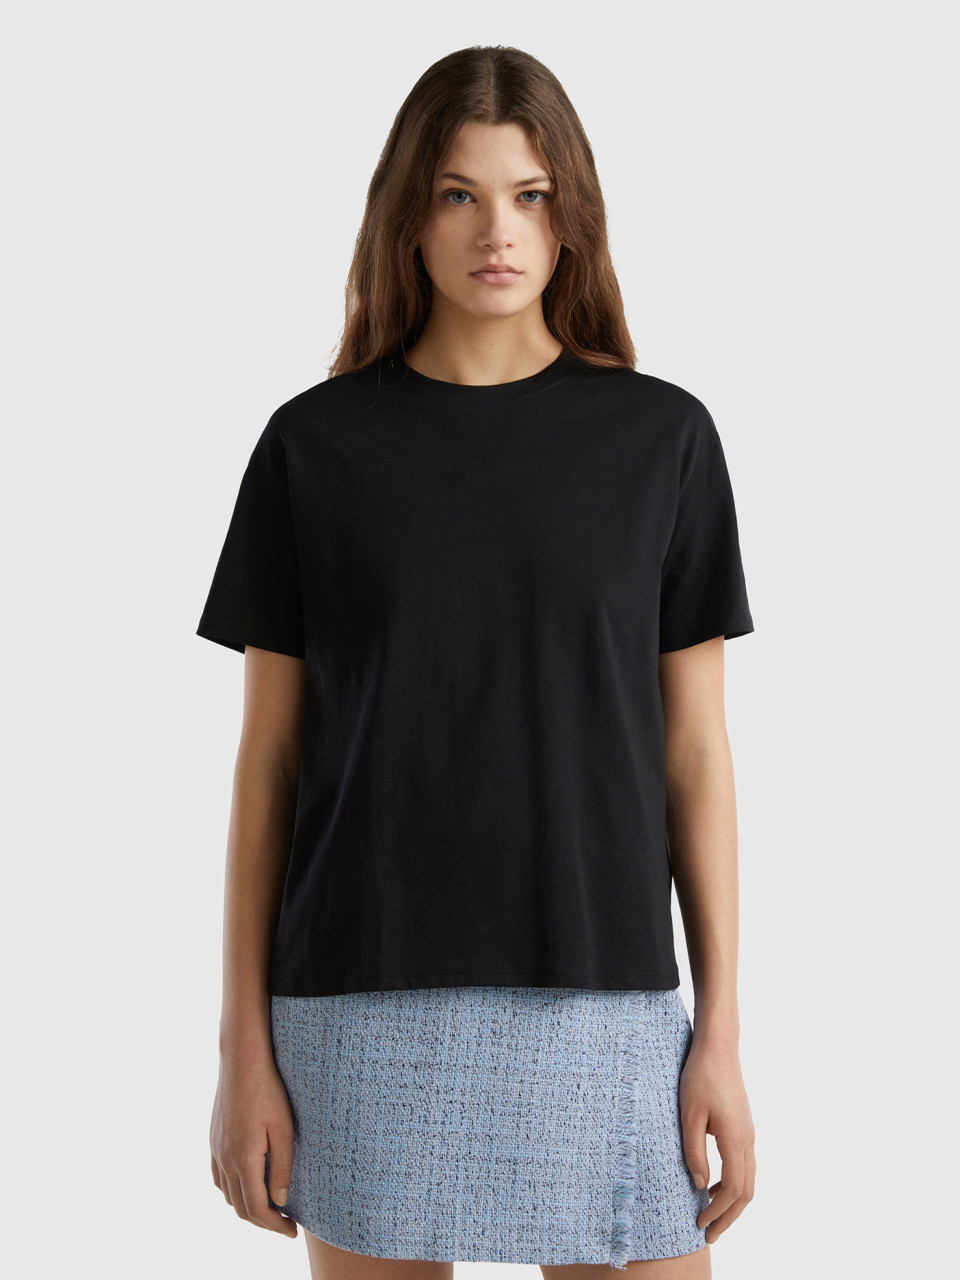 Benetton, Short Sleeve 100% Cotton T-shirt, Black, Women